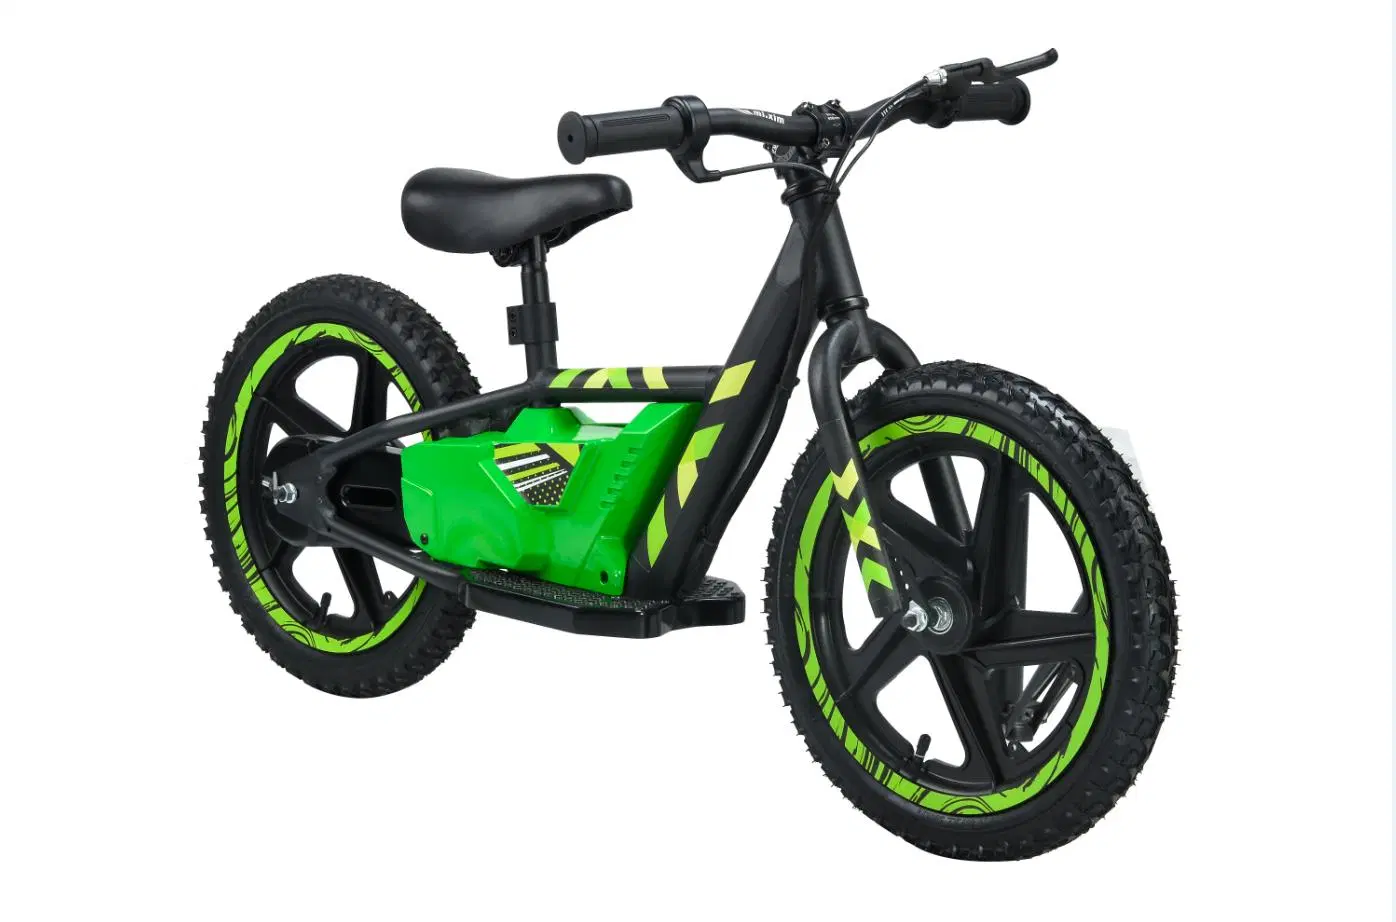 2021 180W/22V Vente chaude Kid vélo électrique pour l'équilibre de la Chine